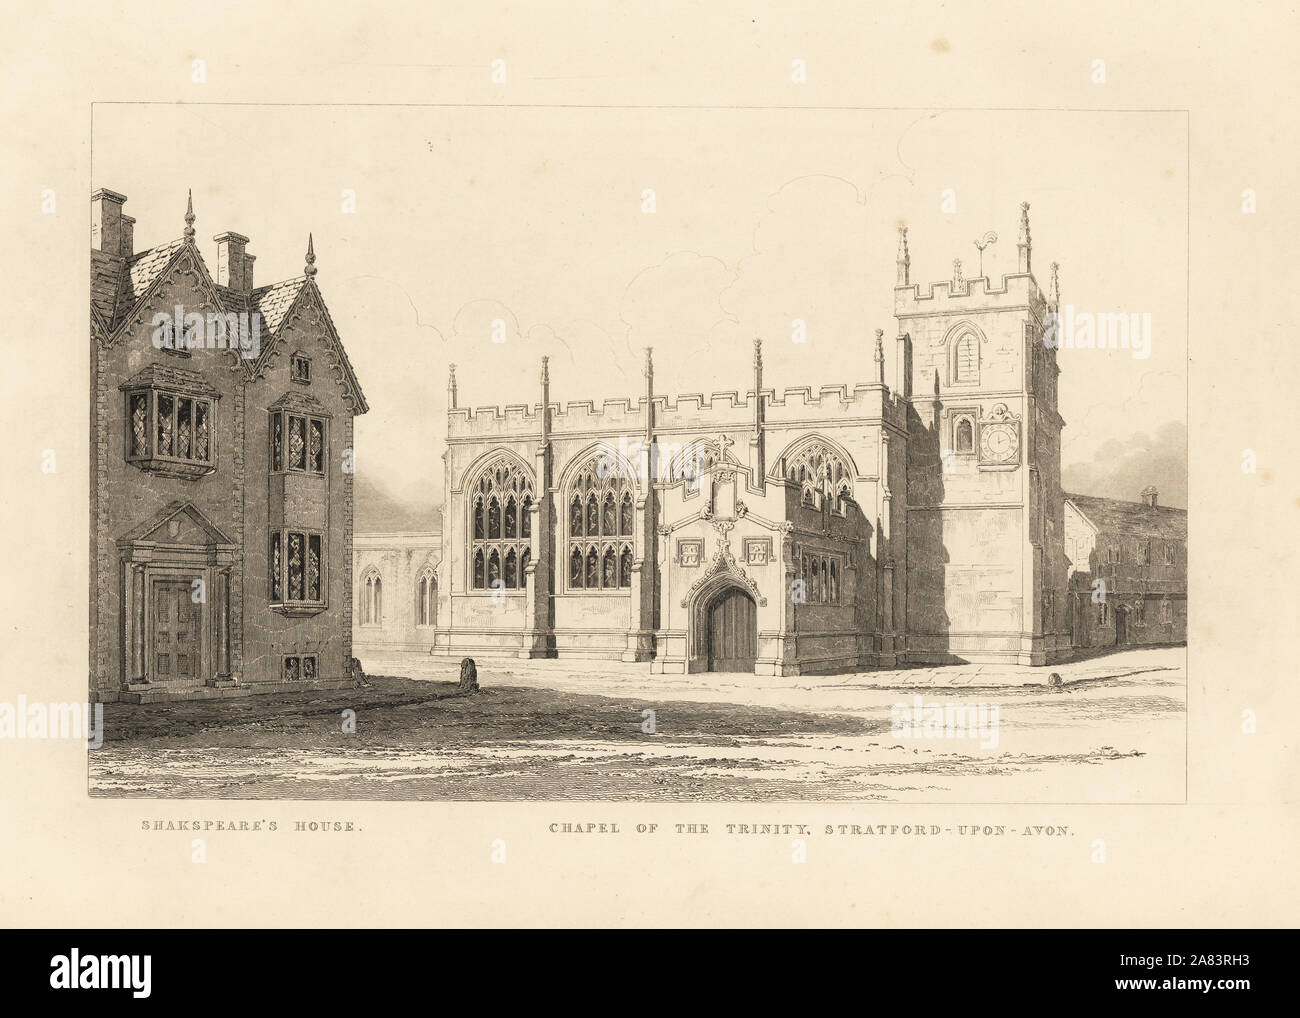 Vue de la chapelle de la Trinité à côté de la maison de Shakespeare à Stratford upon Avon. Gravure par Thomas Fisher de ses peintures sur les murs de la chapelle de la Trinité, Stratford upon Avon, 1808. Banque D'Images